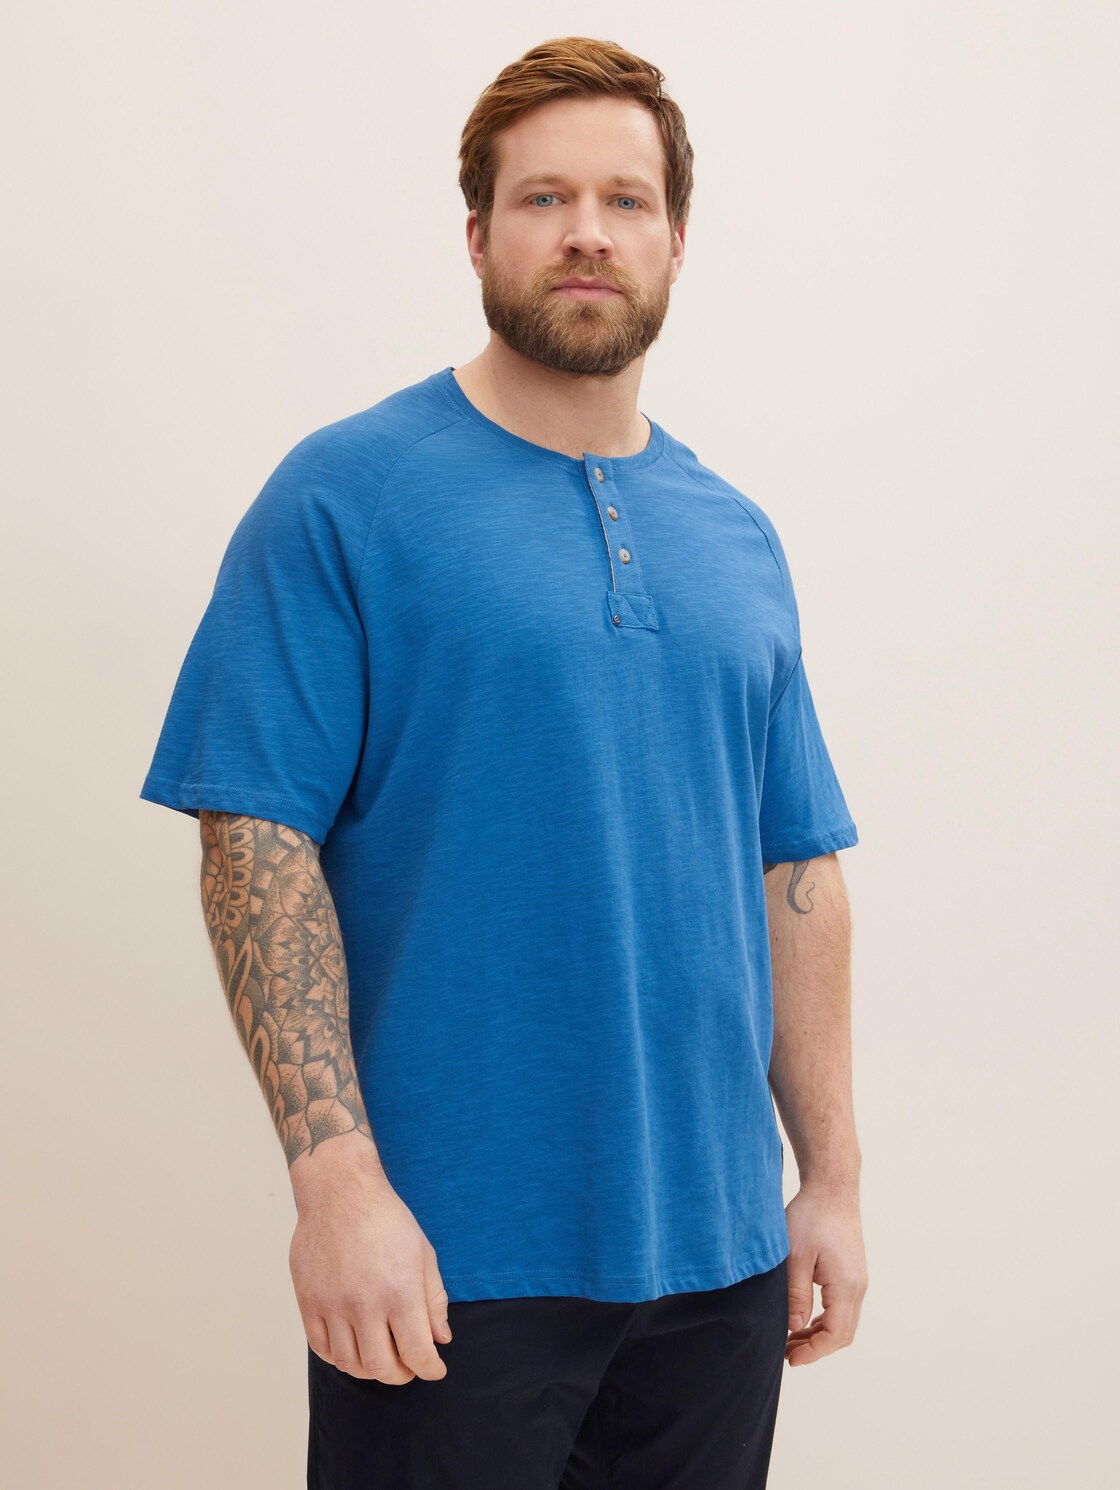 TOM TAILOR Herren Basic T-Shirt, blau, Gr. 4XL,